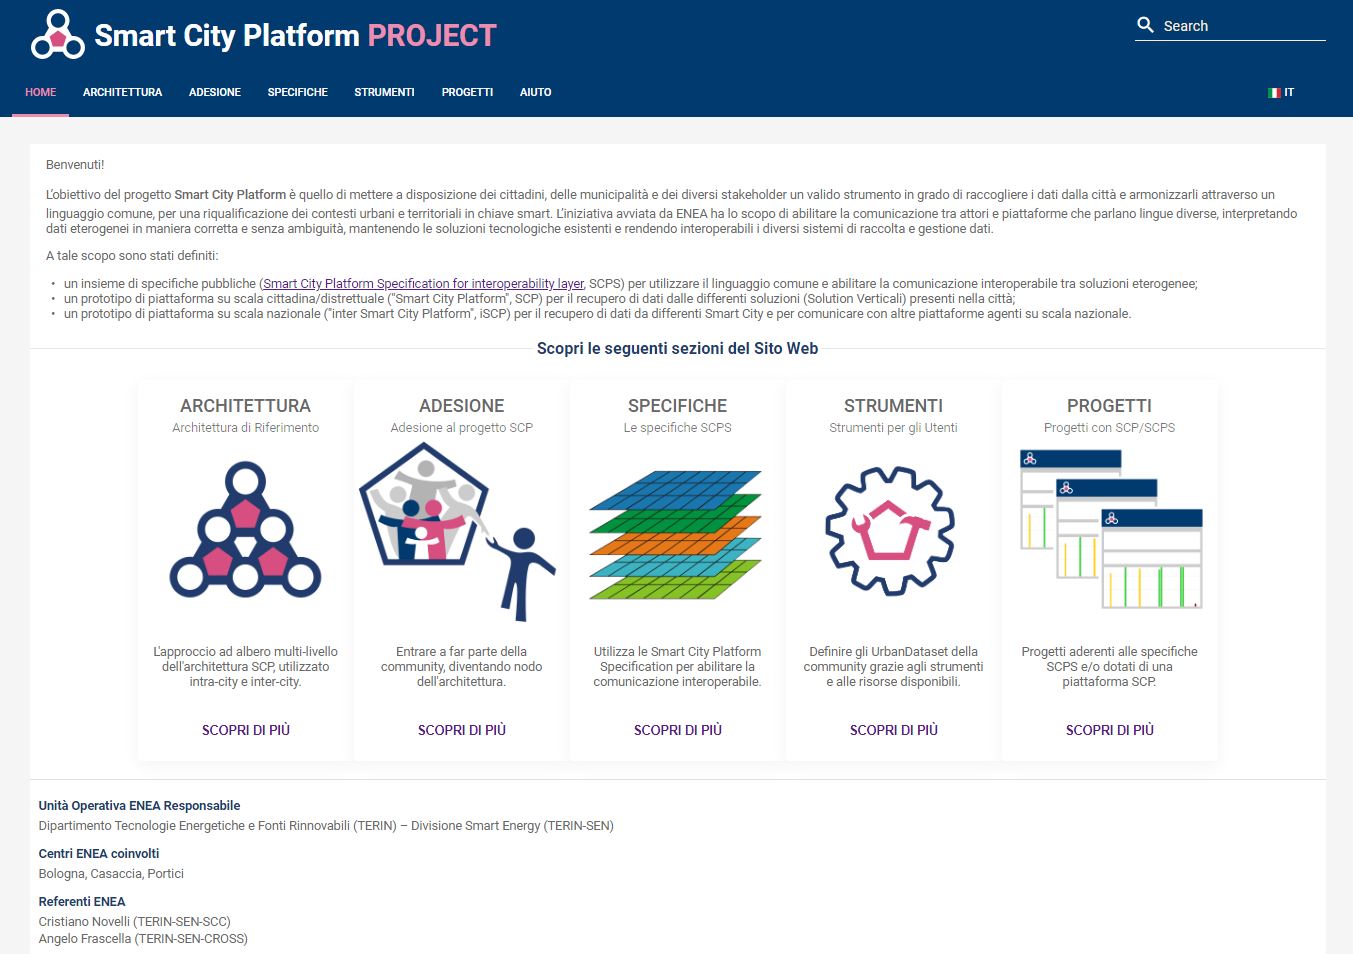 Homepage del sito web "SCP Project", sito di riferimento dove sono pubblicate le specifiche Smart City Platform Specification (SCPS)